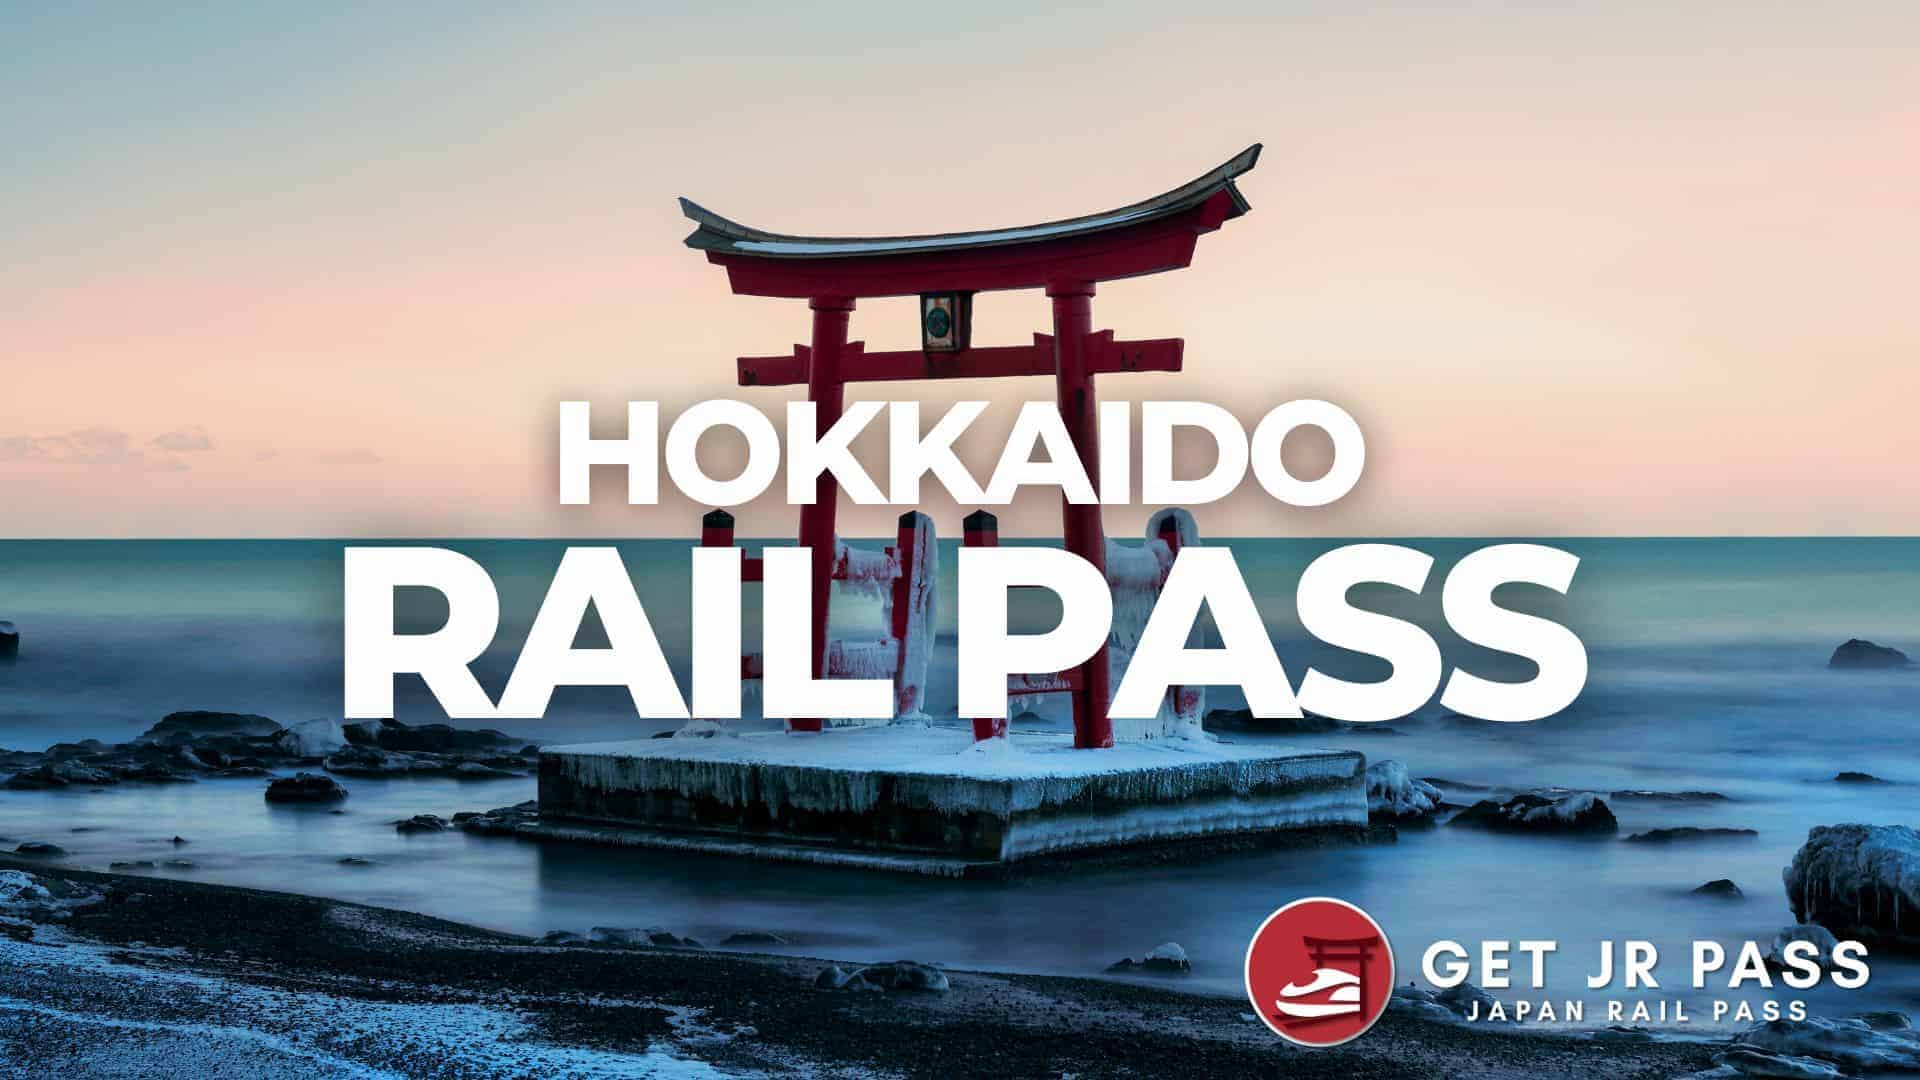 Hokkaido regional pass